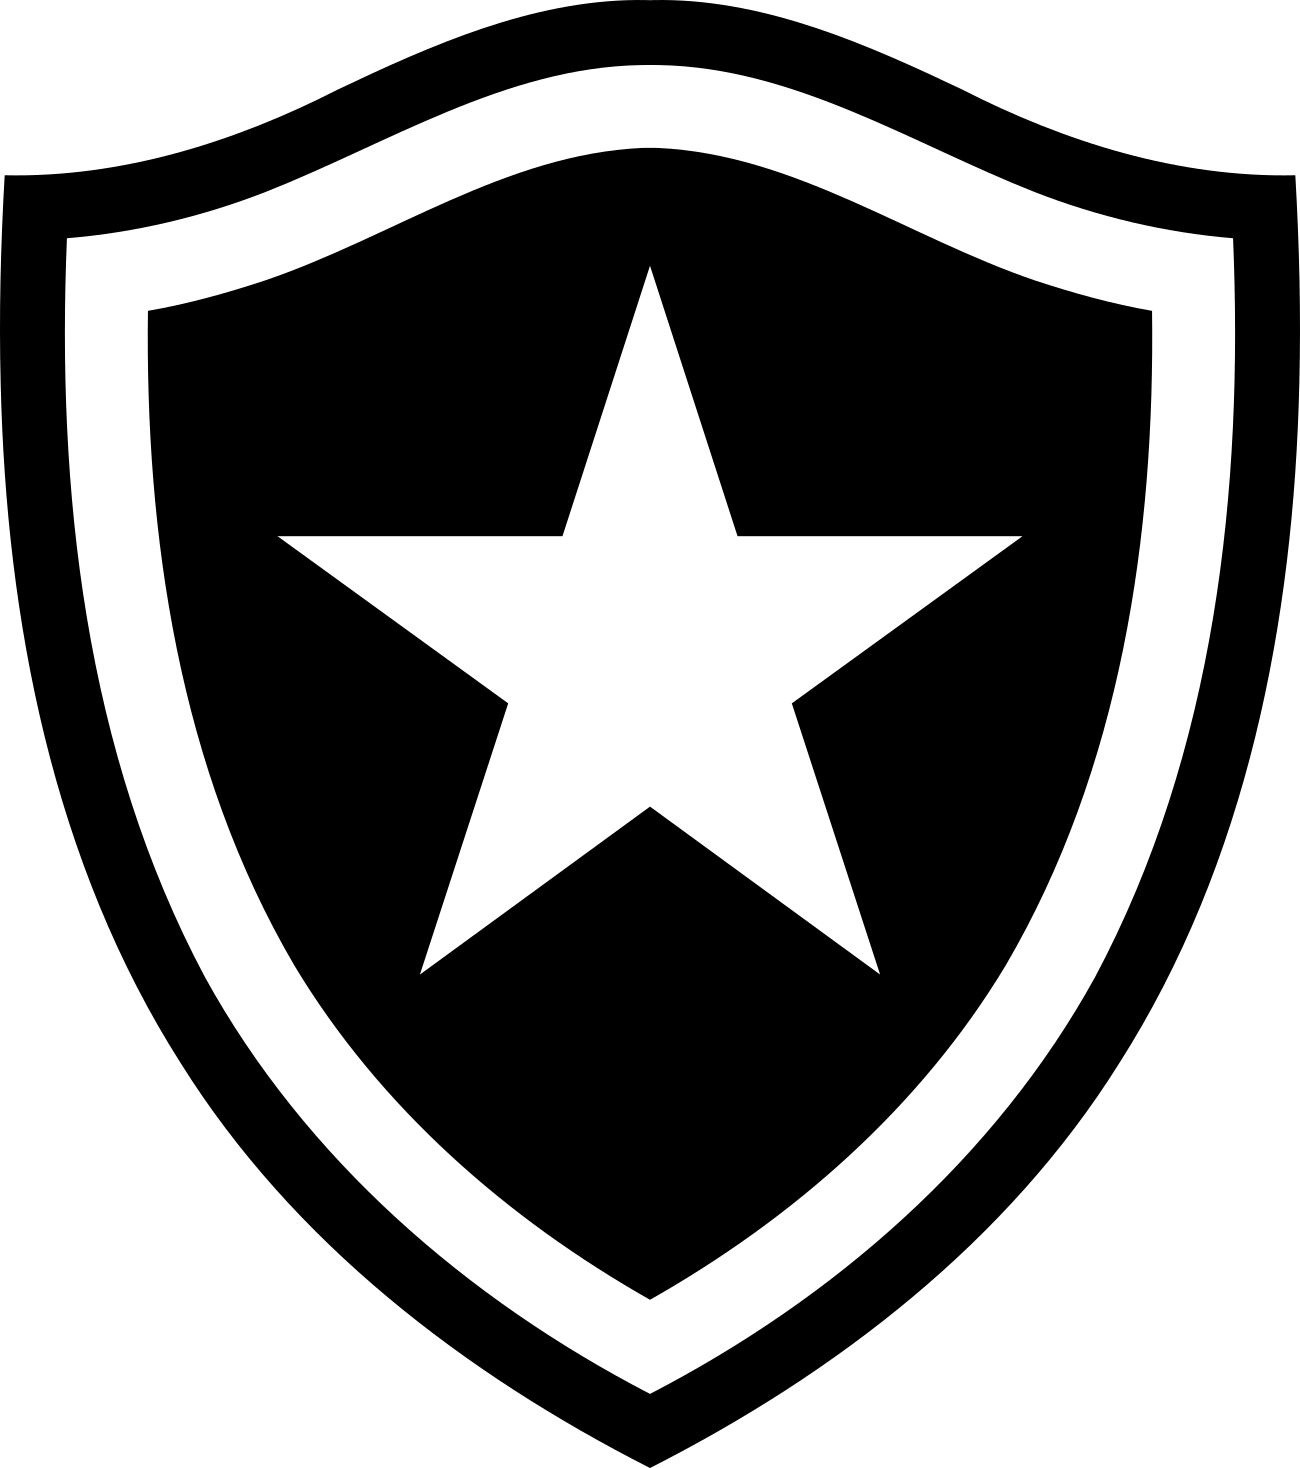 Escudo do Botafogo.